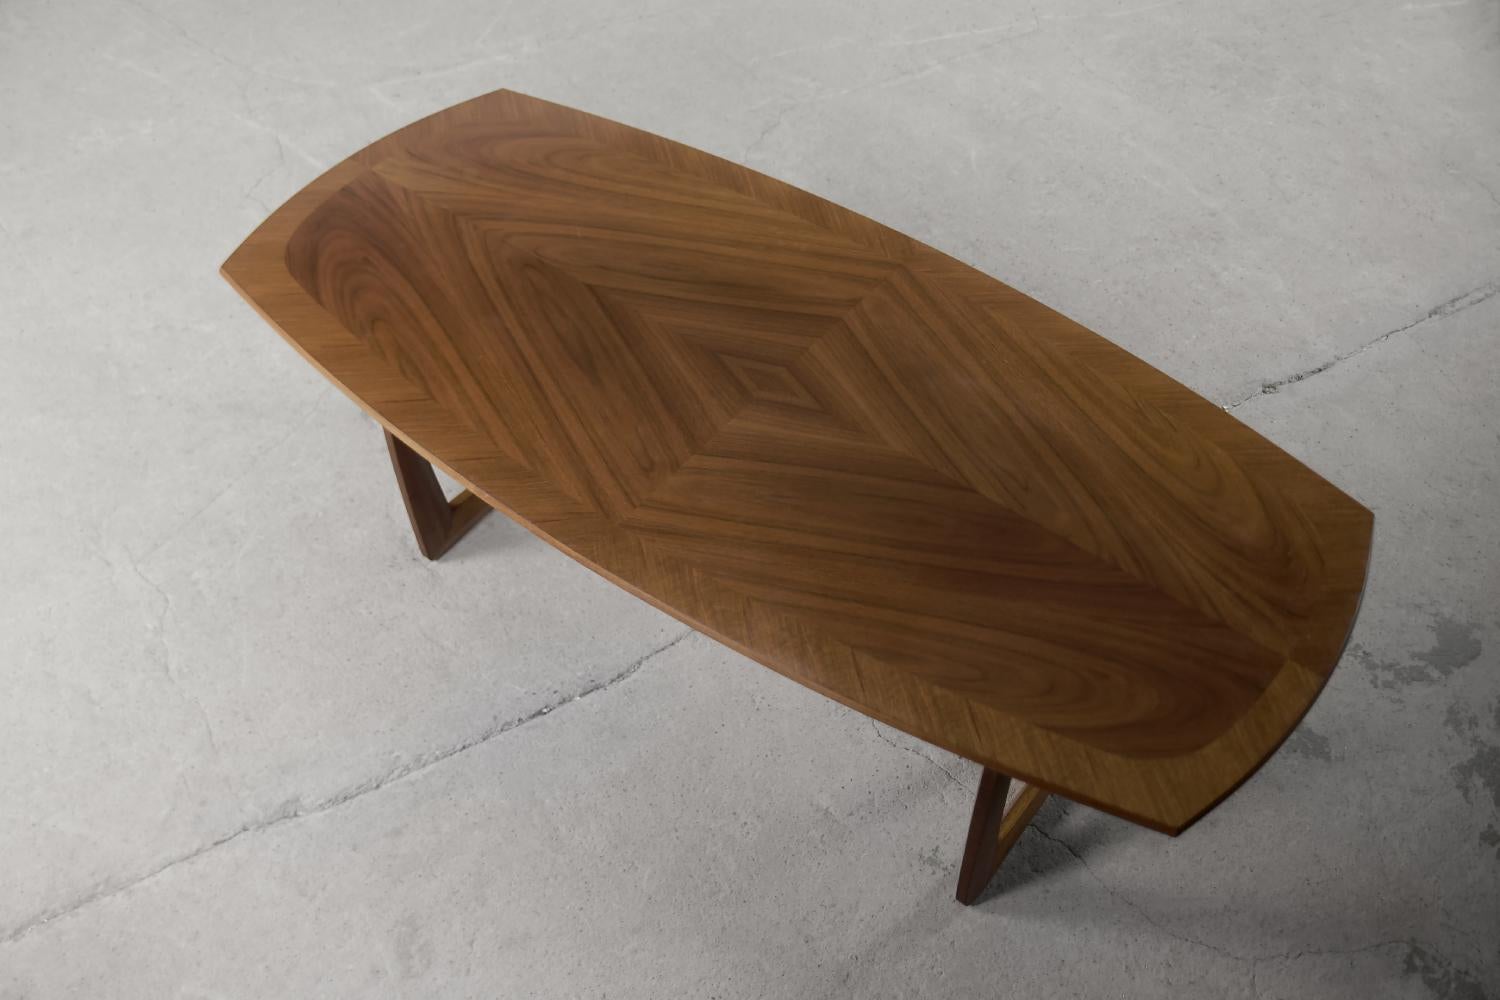 Cette table elliptique a été fabriquée par la société allemande Kondor Möbel dans les années 1960. Il était fait de bois de noyer dans une chaude nuance de brun. Les pieds de table croisés et le plateau décoratif plaqué en noyer constituent un